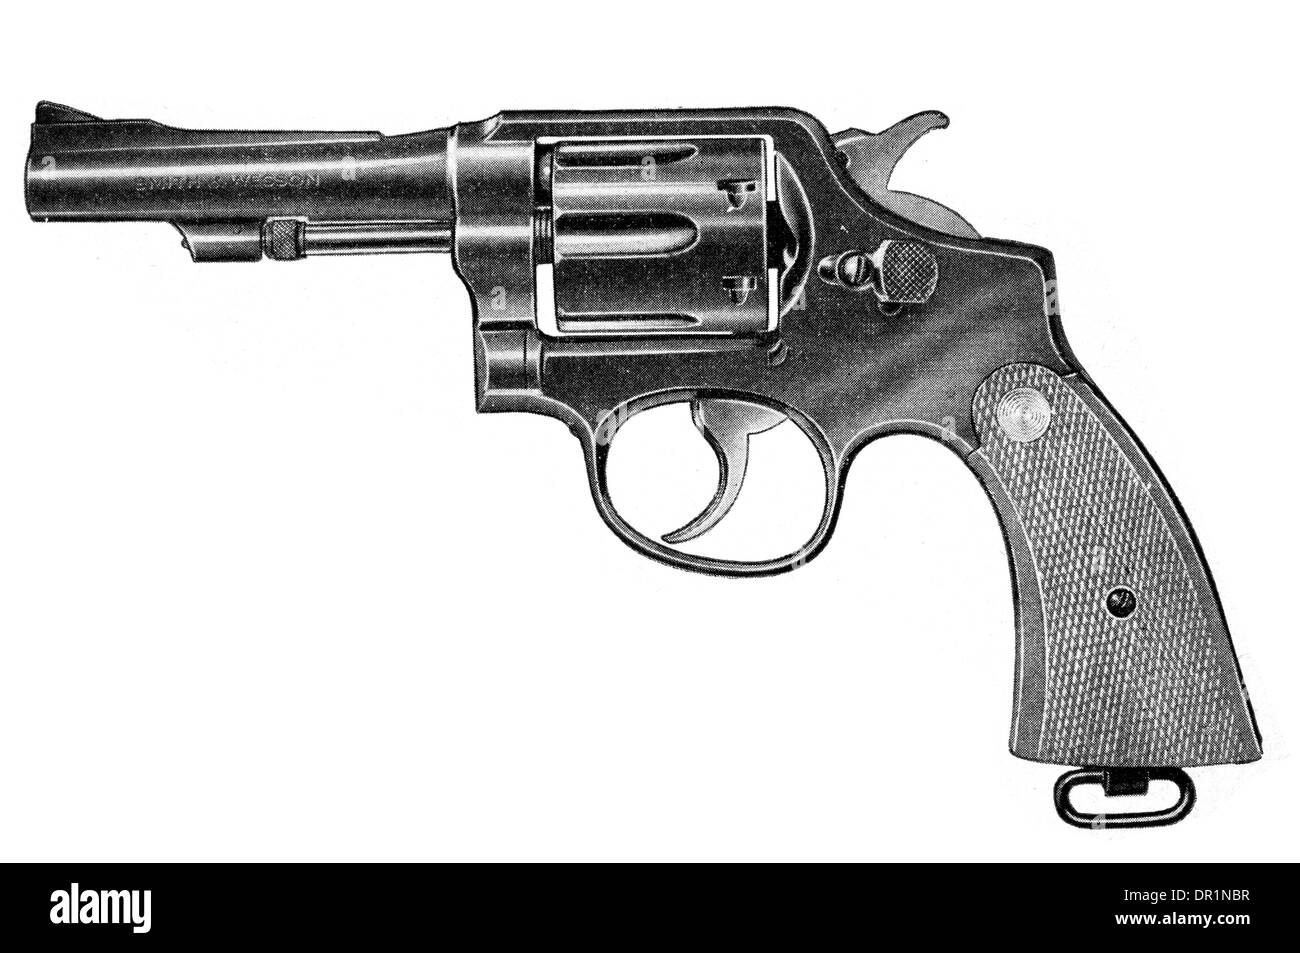 Smith y Wesson militares y policías el revólver calibre 38 con acortado barril Foto de stock